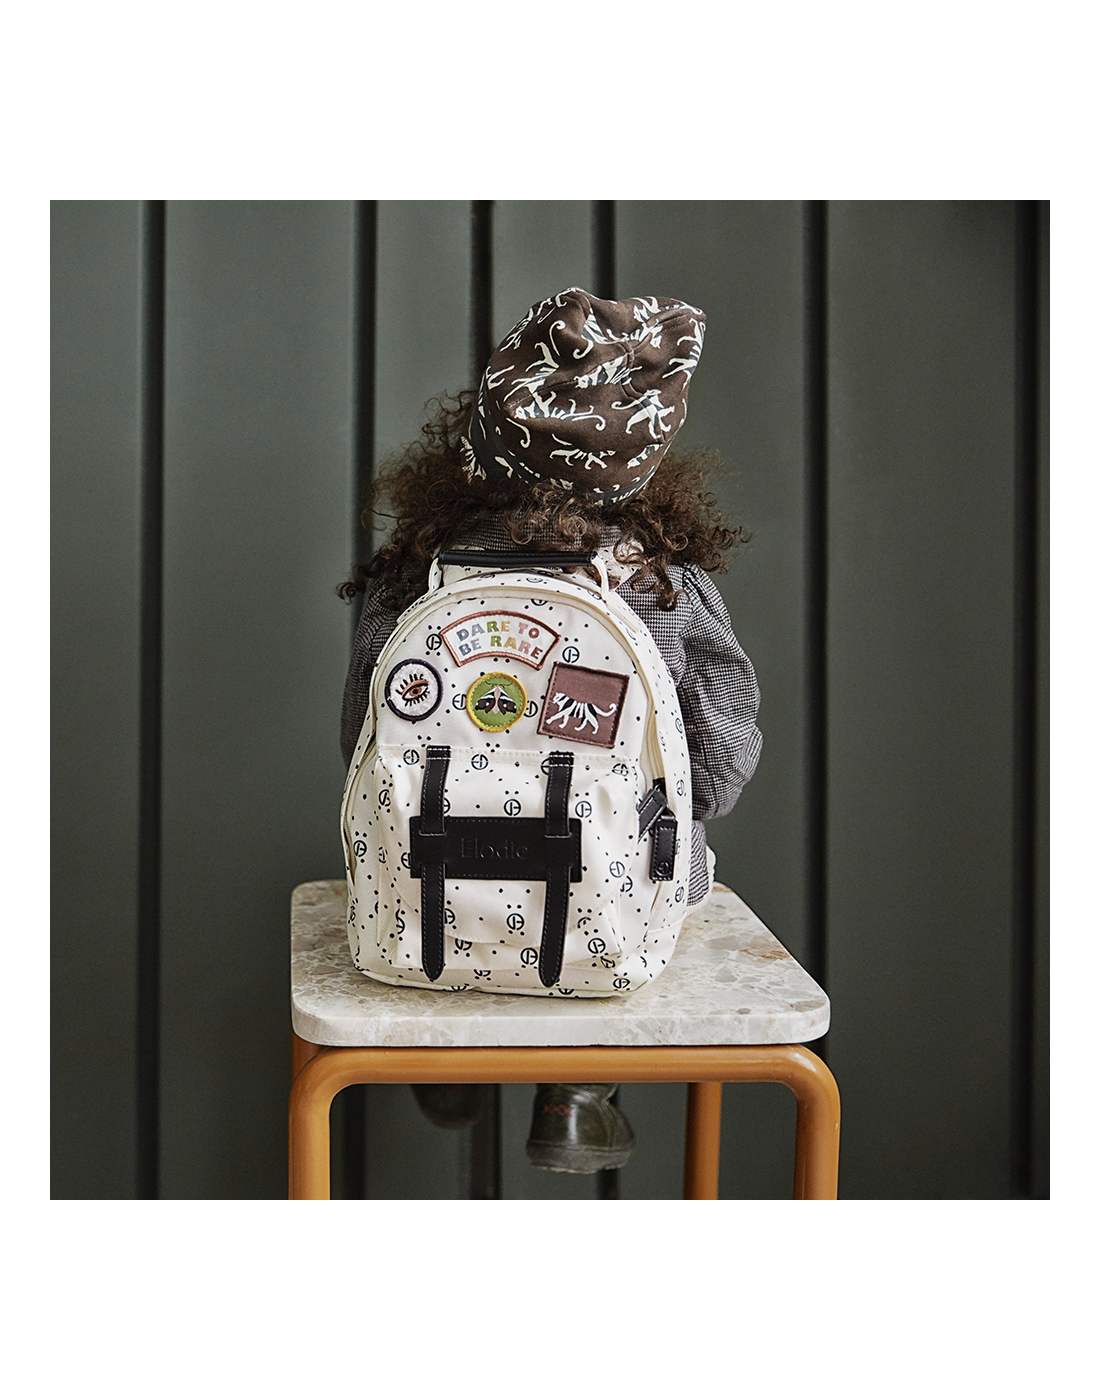 Elodie Details Kids Backpack-mini Monogram